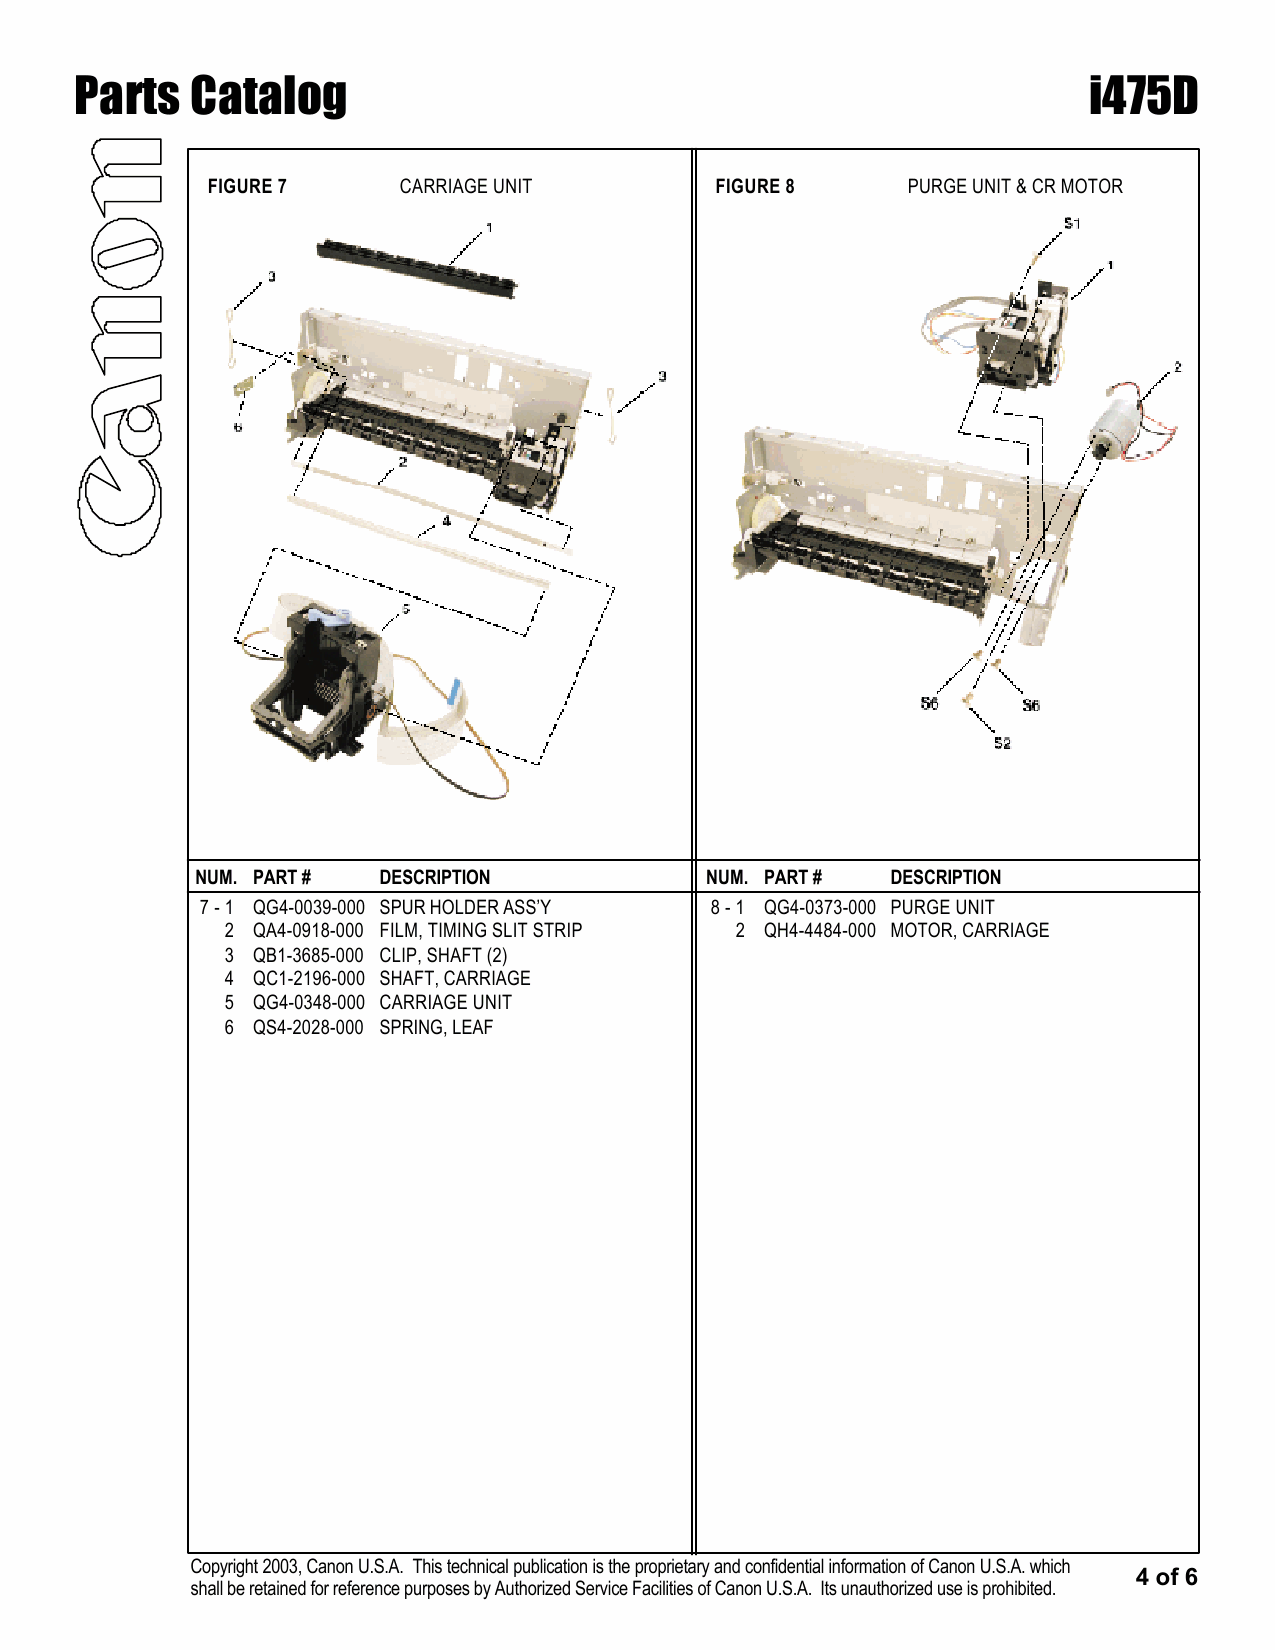 Canon PIXUS i475D Parts Catalog Manual-5